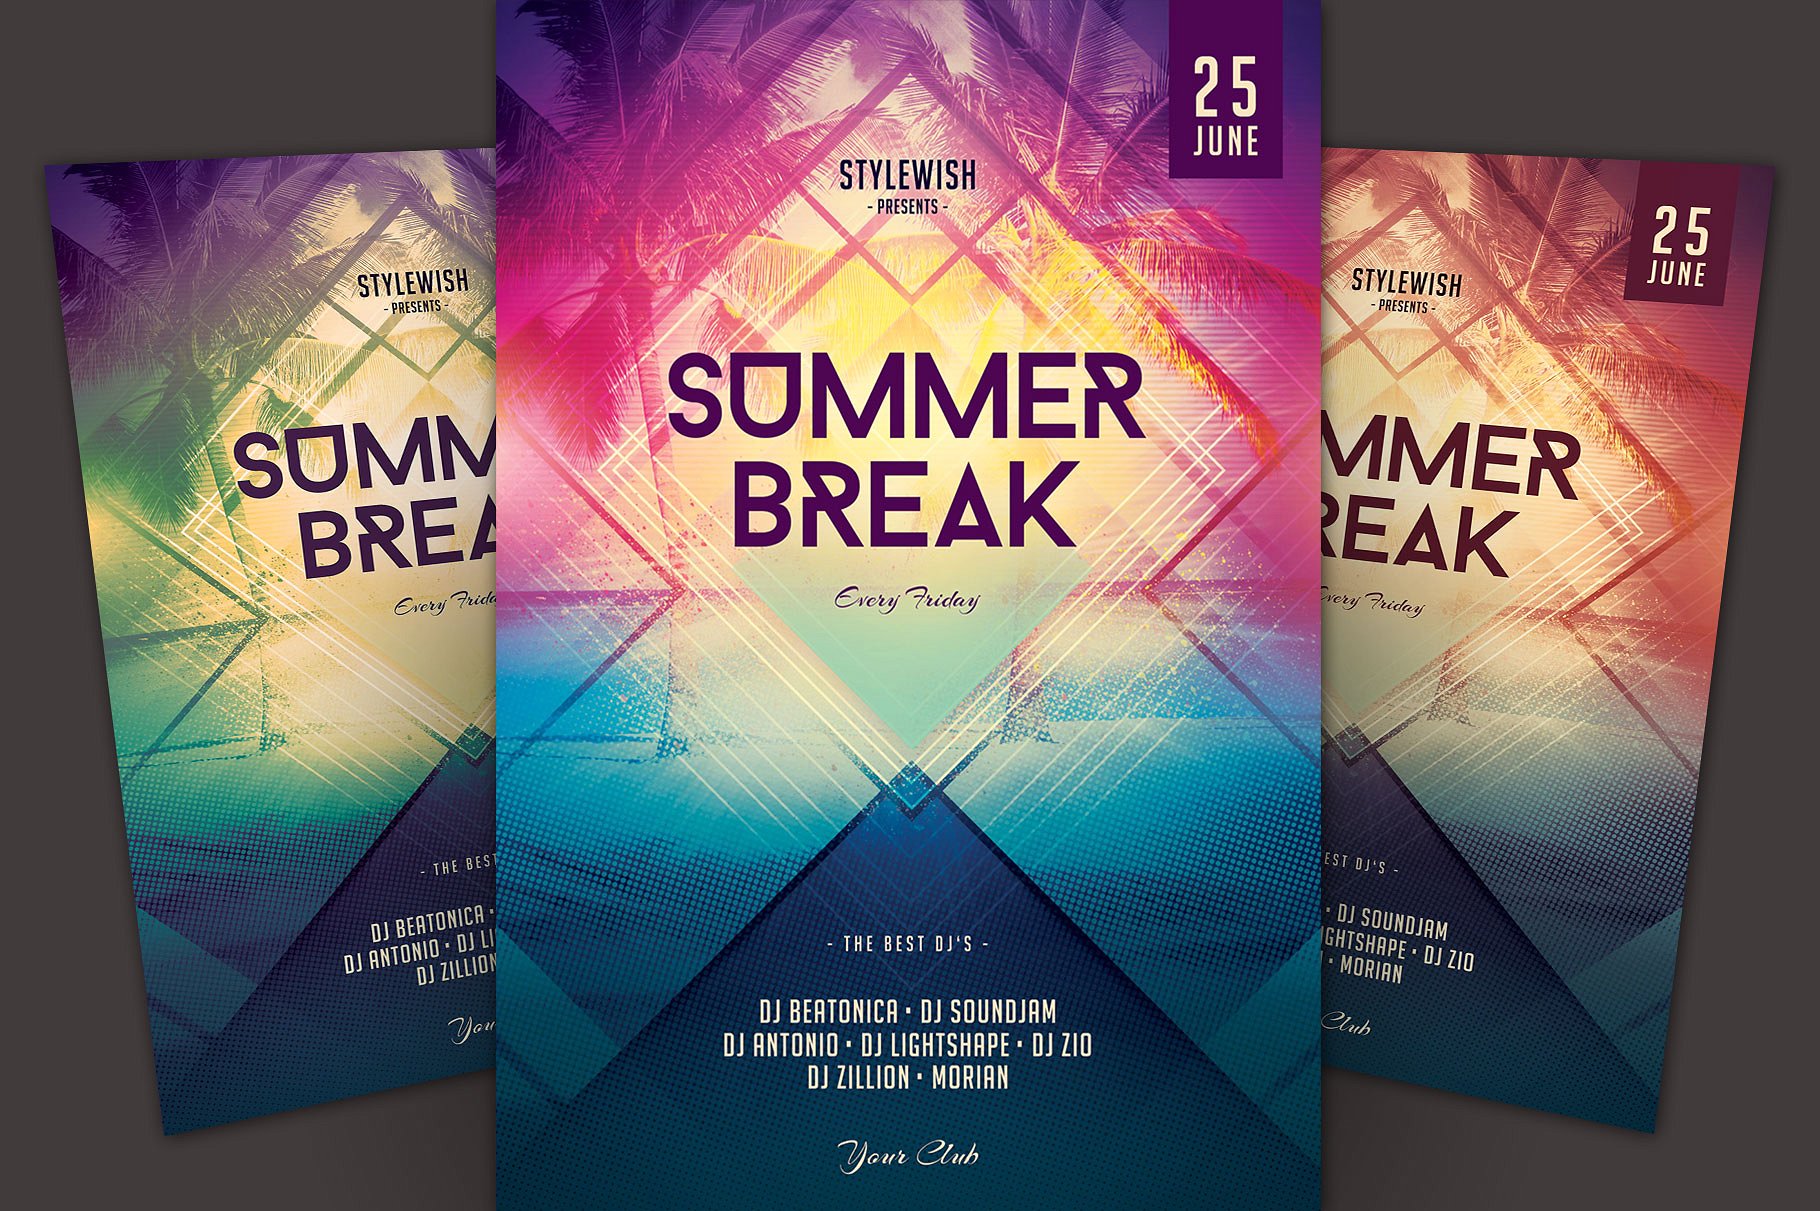 夏季海滩派对活动宣传单模板 Summer Break Flyer Template插图